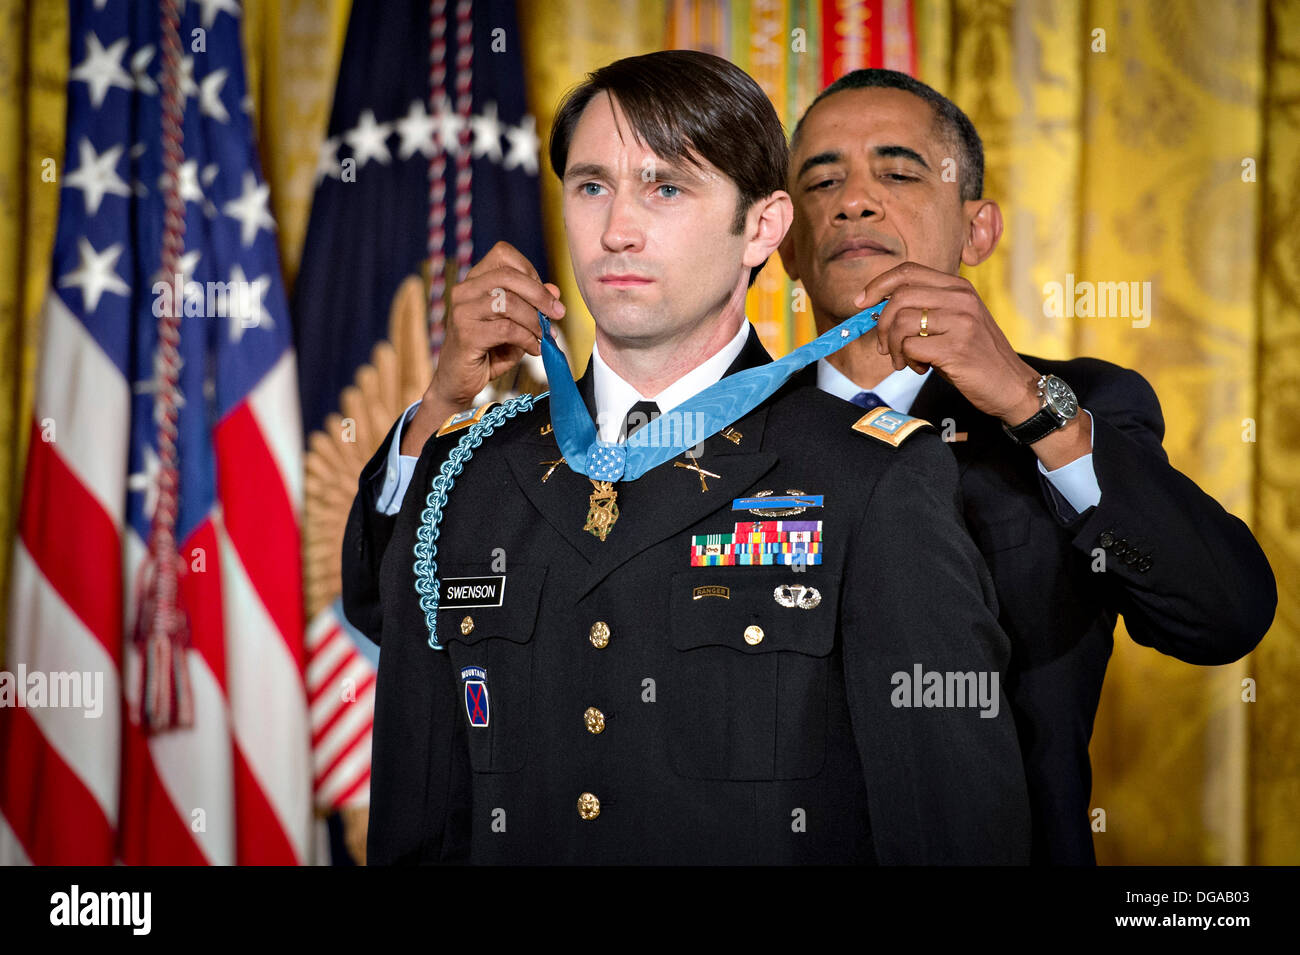 Ehemaliger US Army Captain William D. Swenson erhält die Medal Of Honor von Präsident Barack Obama während einer Zeremonie im East Room des weißen Hauses 15. Oktober 2013 in Washington, DC. Die Medal Of Honor ist die höchste militärische Auszeichnung des Landes. Stockfoto